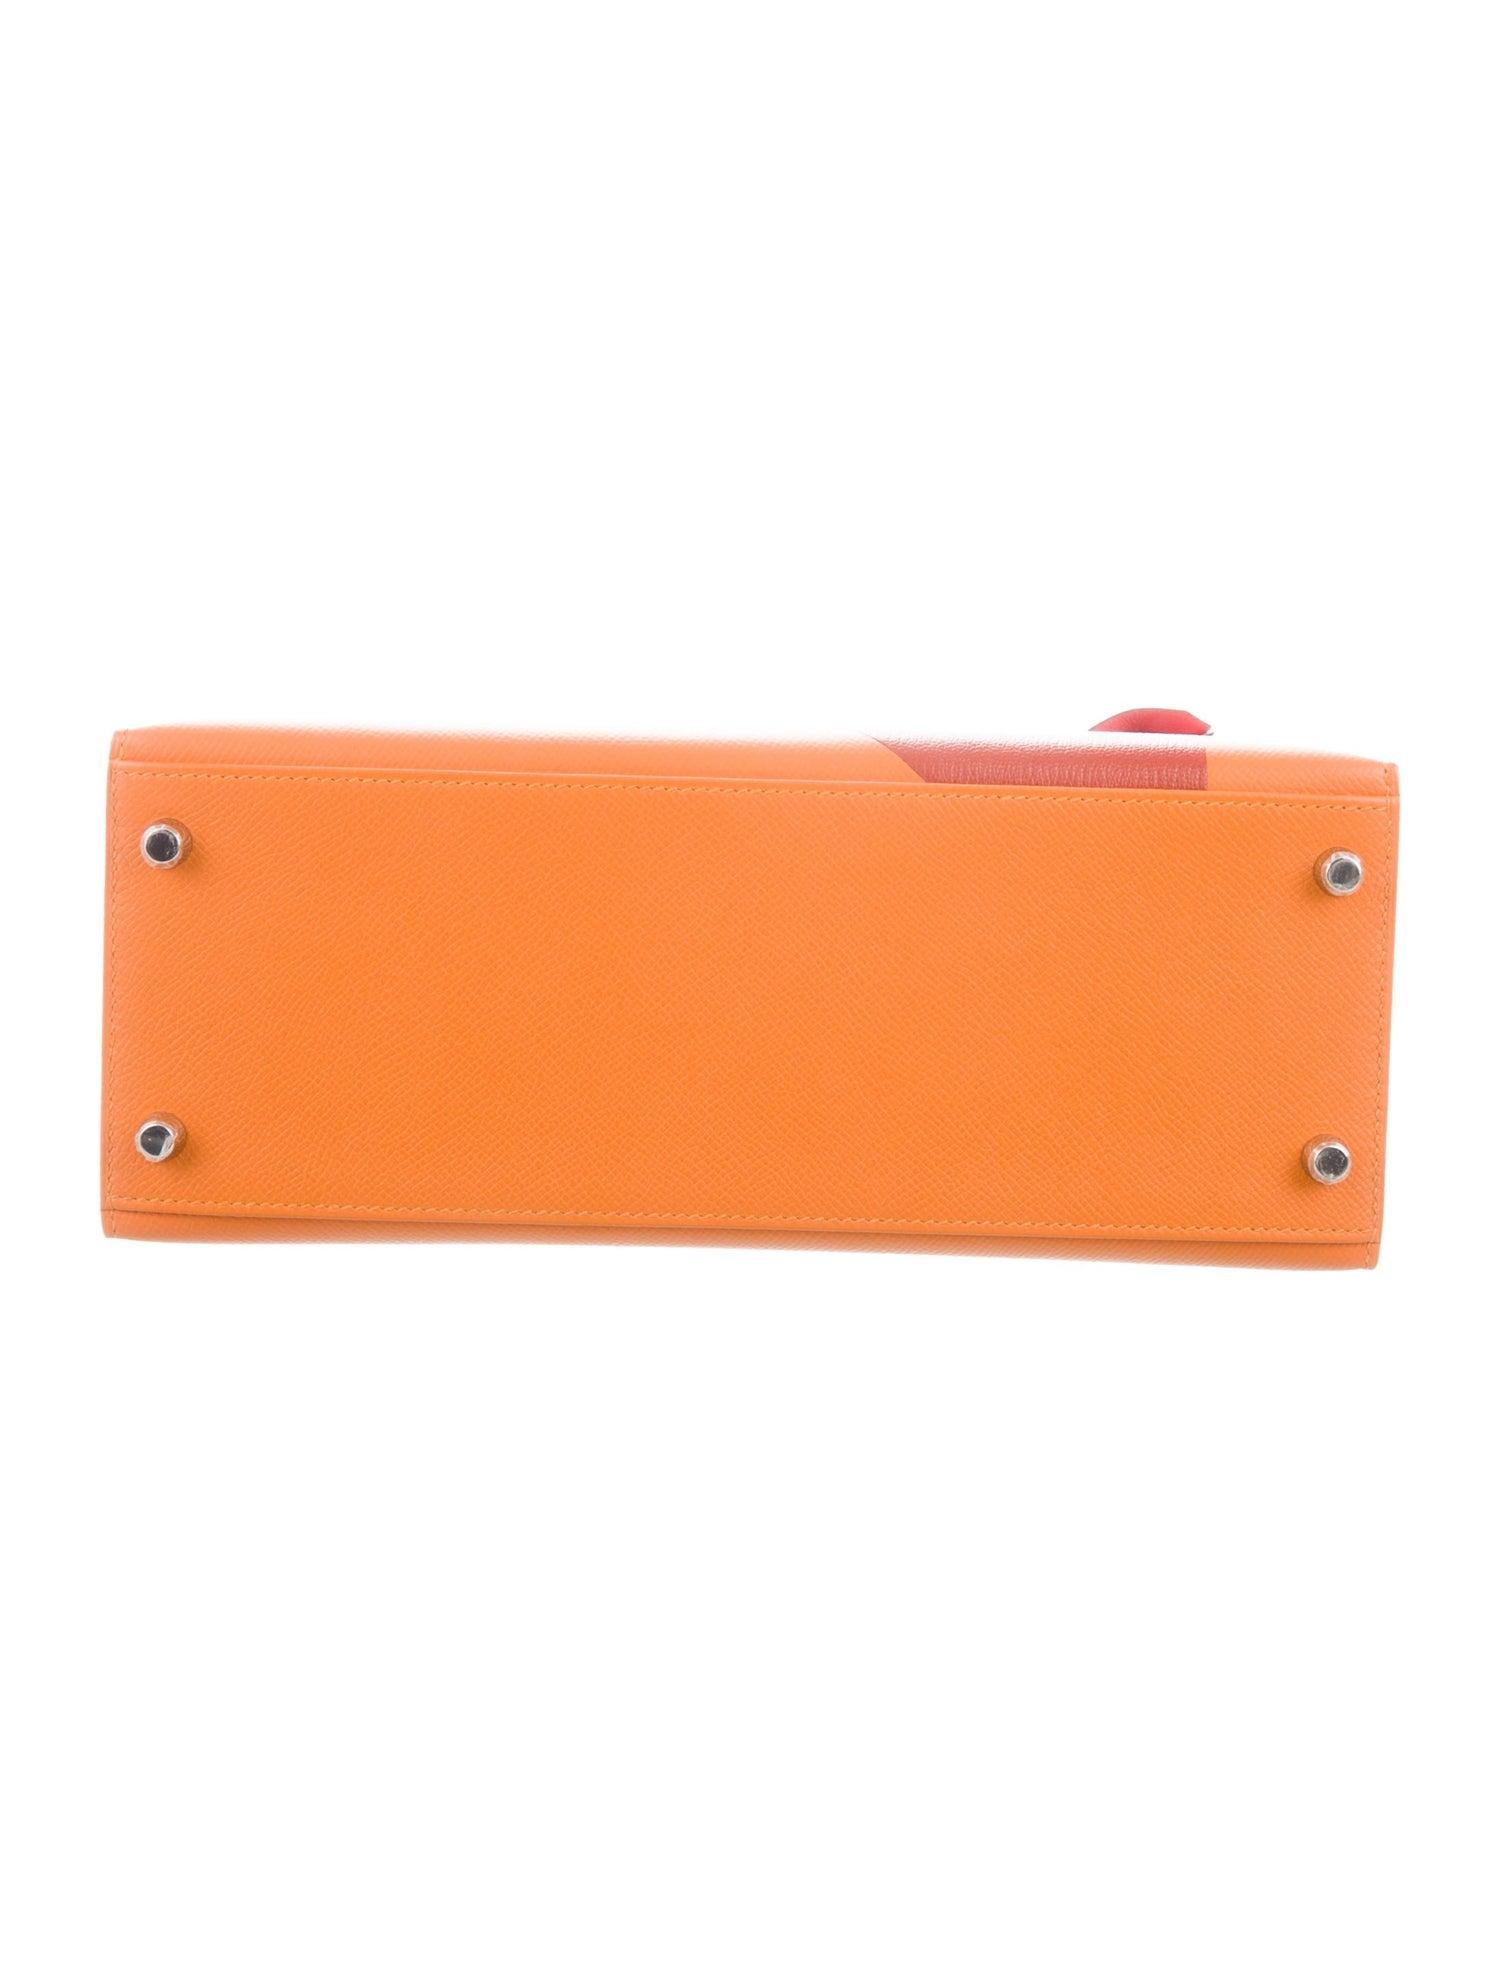 Hermes NEW Kelly 28 Orange Palladium Top Handle Tote Shoulder Bag in Box 1